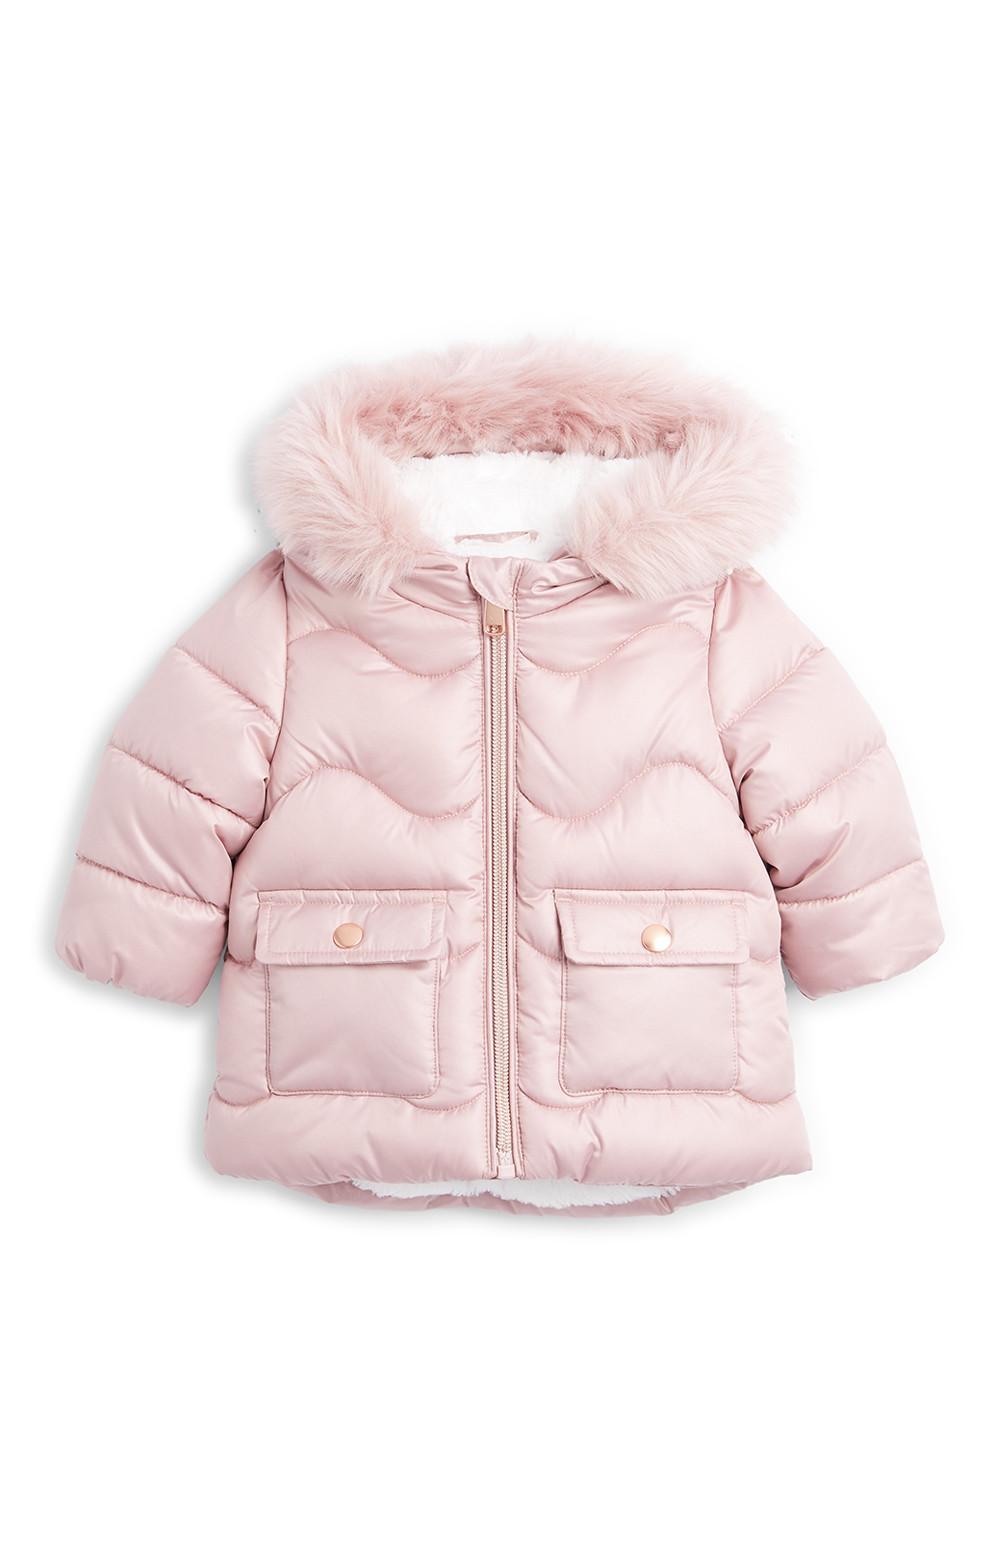 primark baby girl jacket